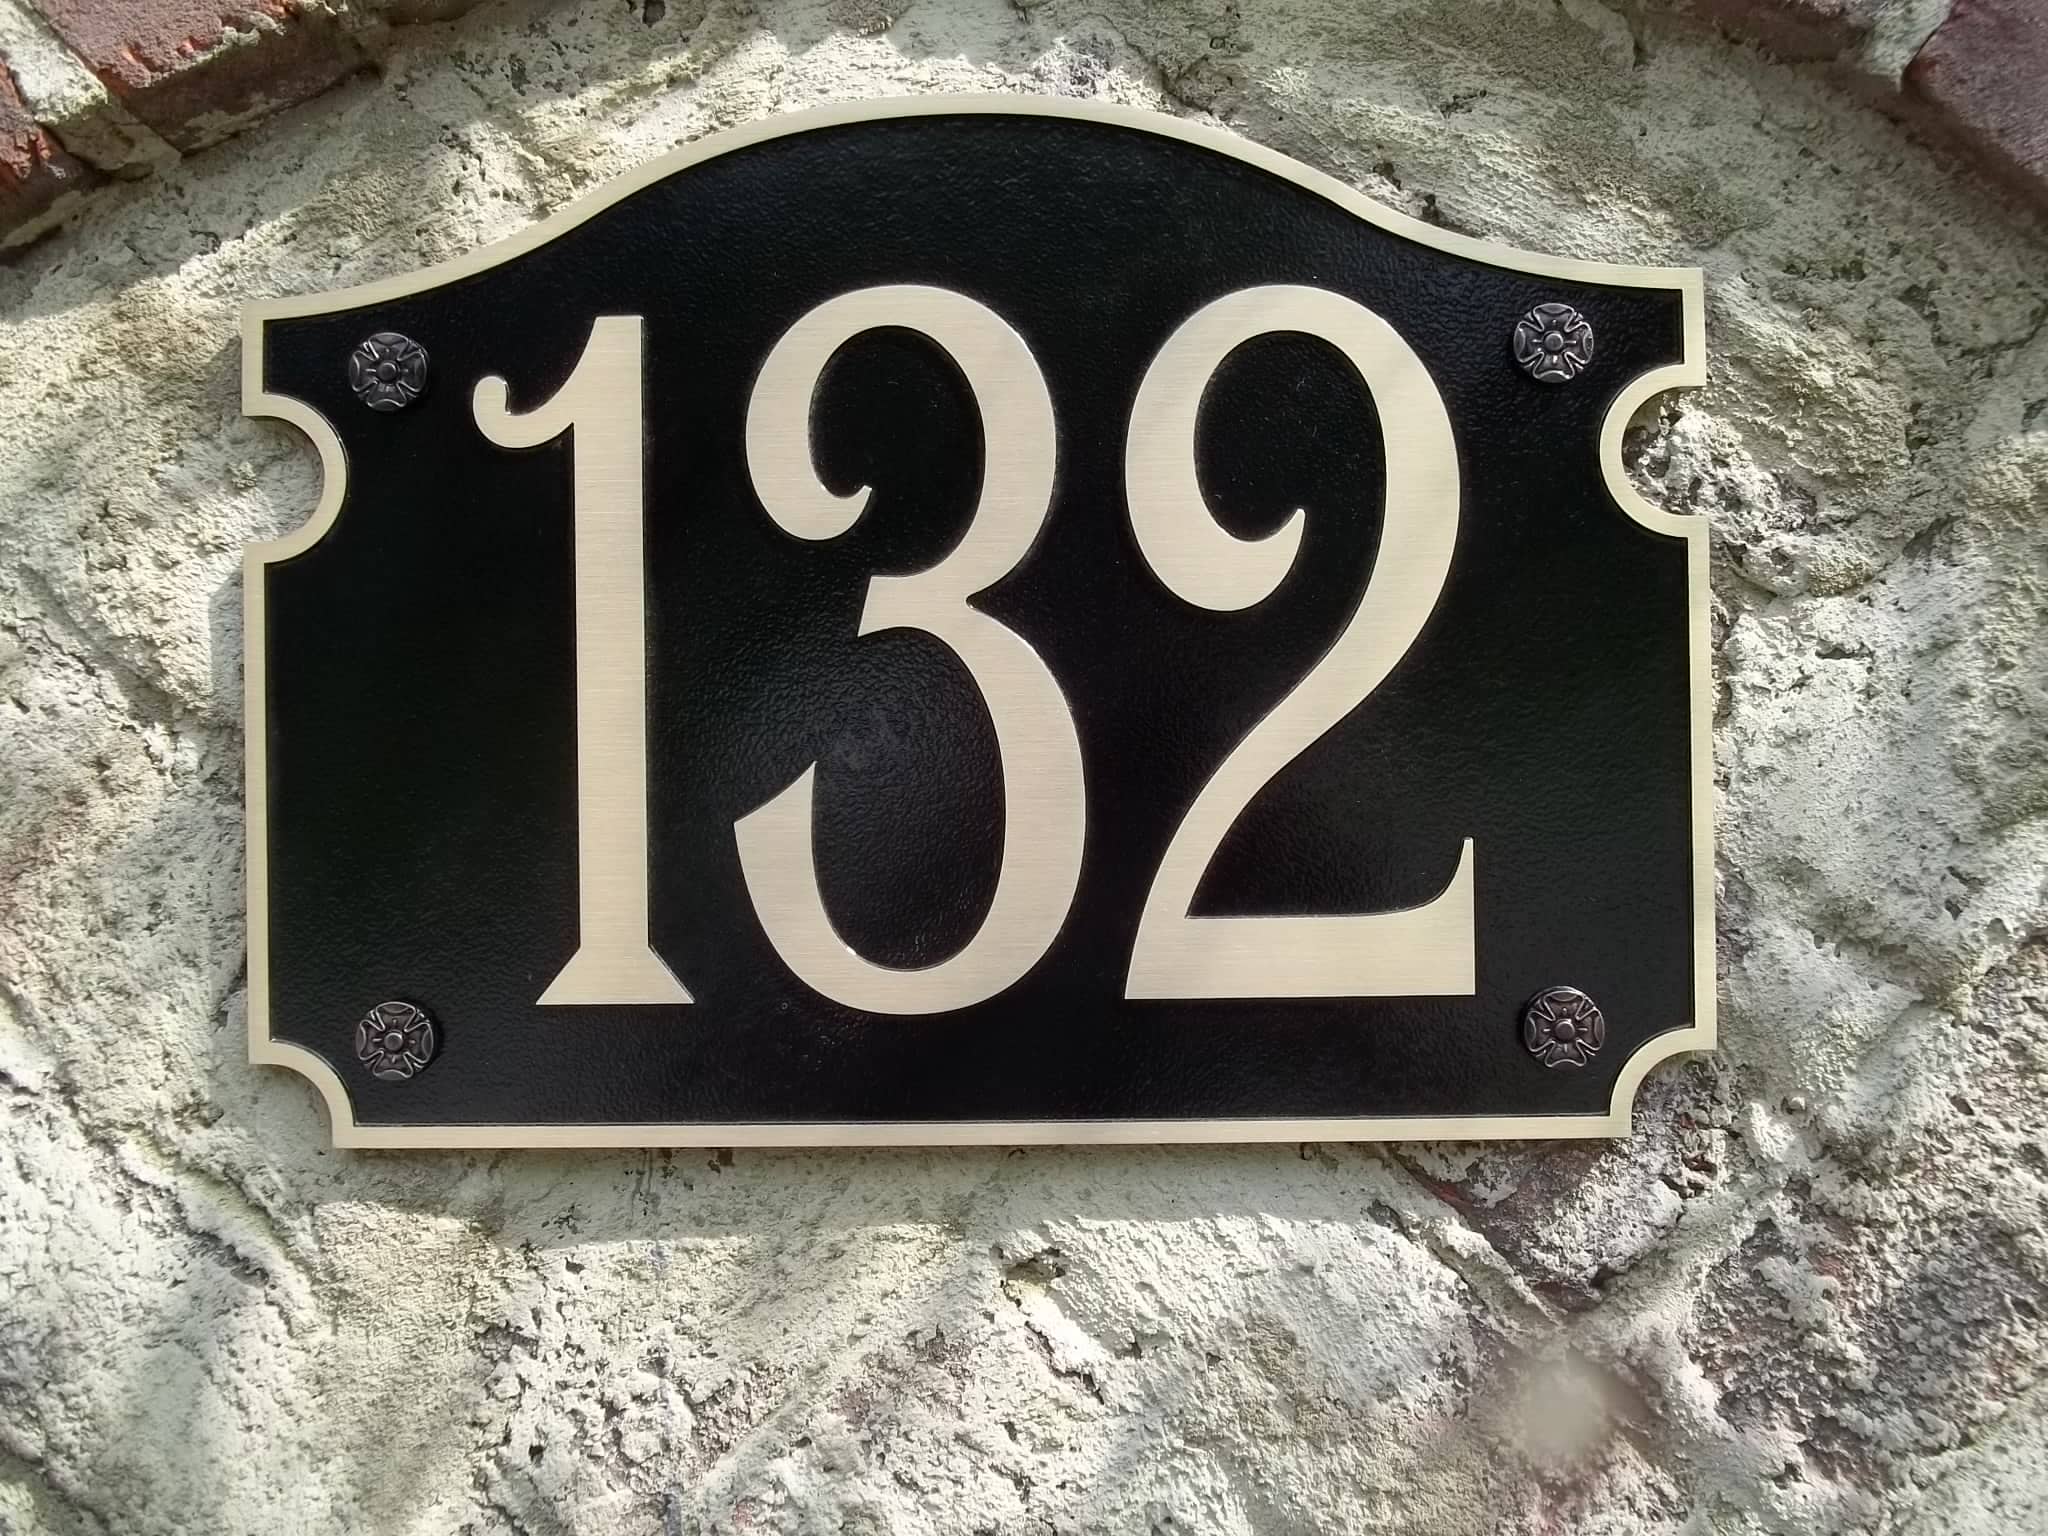 Street number plaque. 12-Point SignWorks - Franklin TN